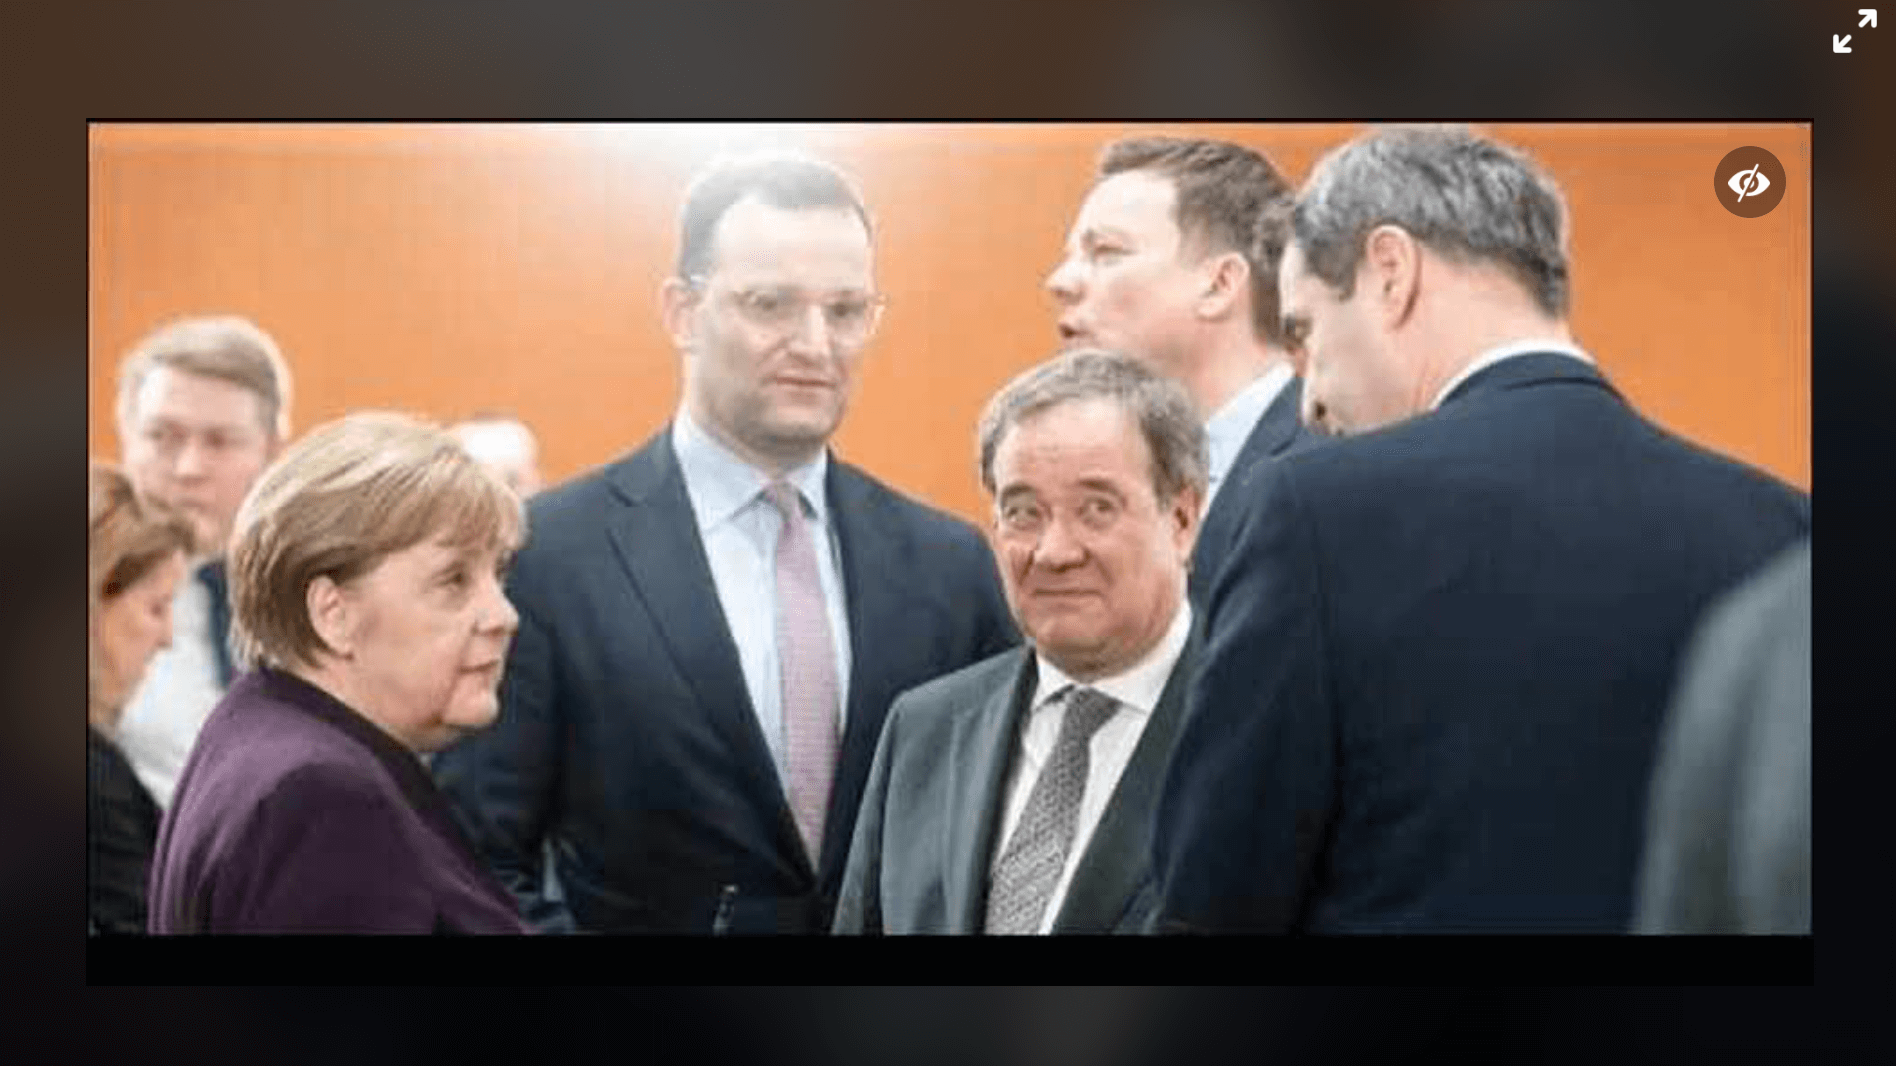 Dieses Foto von Merkel, Spahn, Laschet, Hans und Söder (v. l. n. r.) wurde im März aufgenommen, nicht wie auf Facebook behauptet im Oktober 2020. (Quelle: Facebook, Screenshot: CORRECTIV)